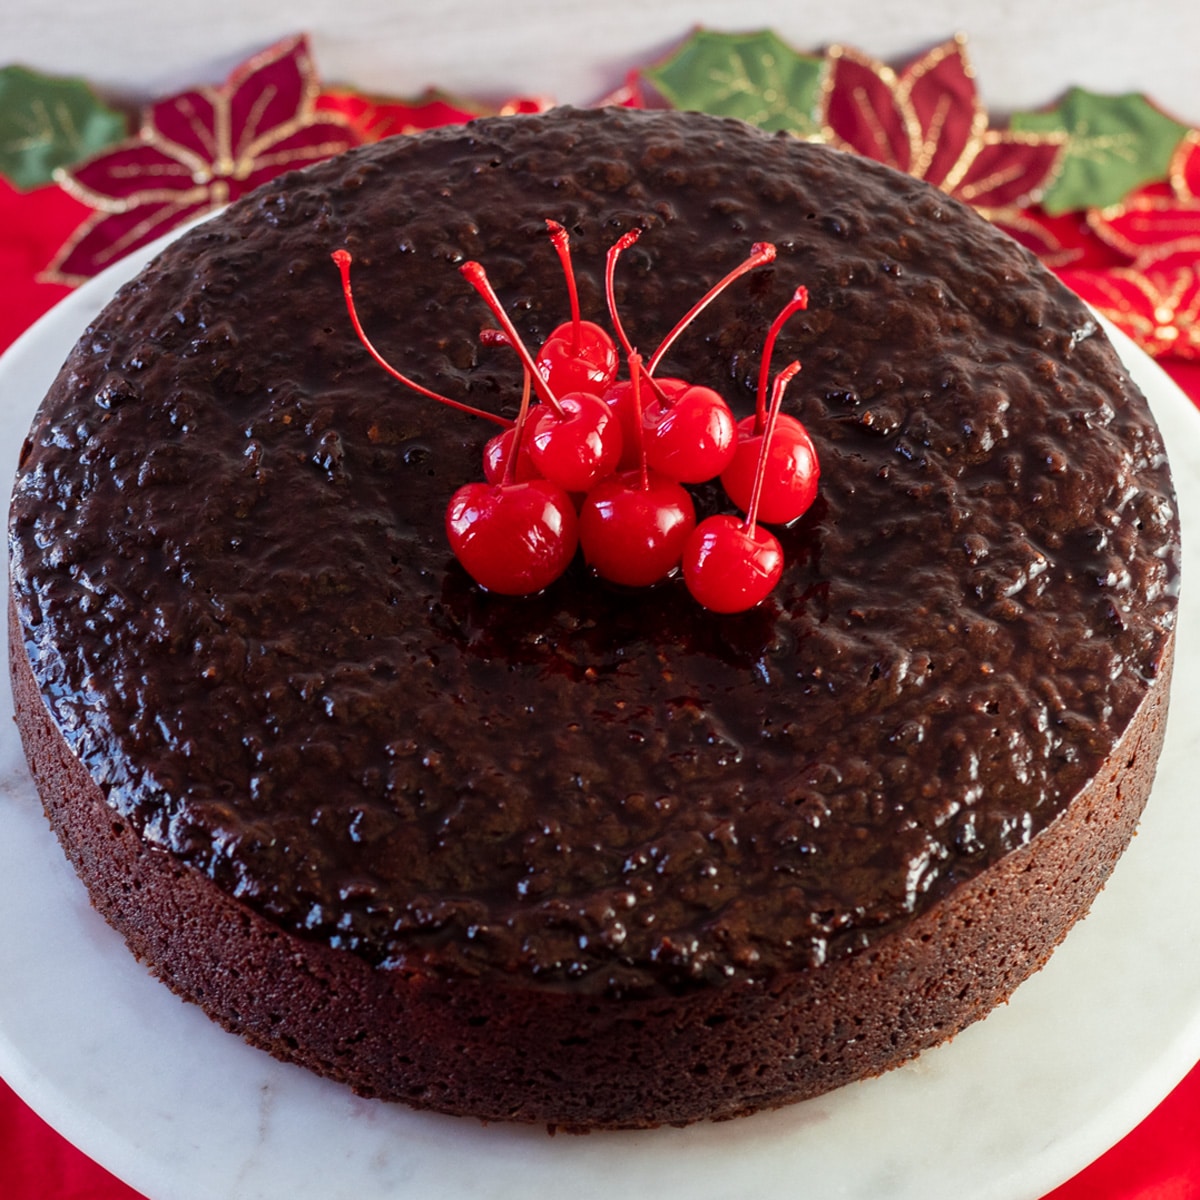 Gambar persegi melihat kue hitam Jamaika, dengan ceri di atas kue.